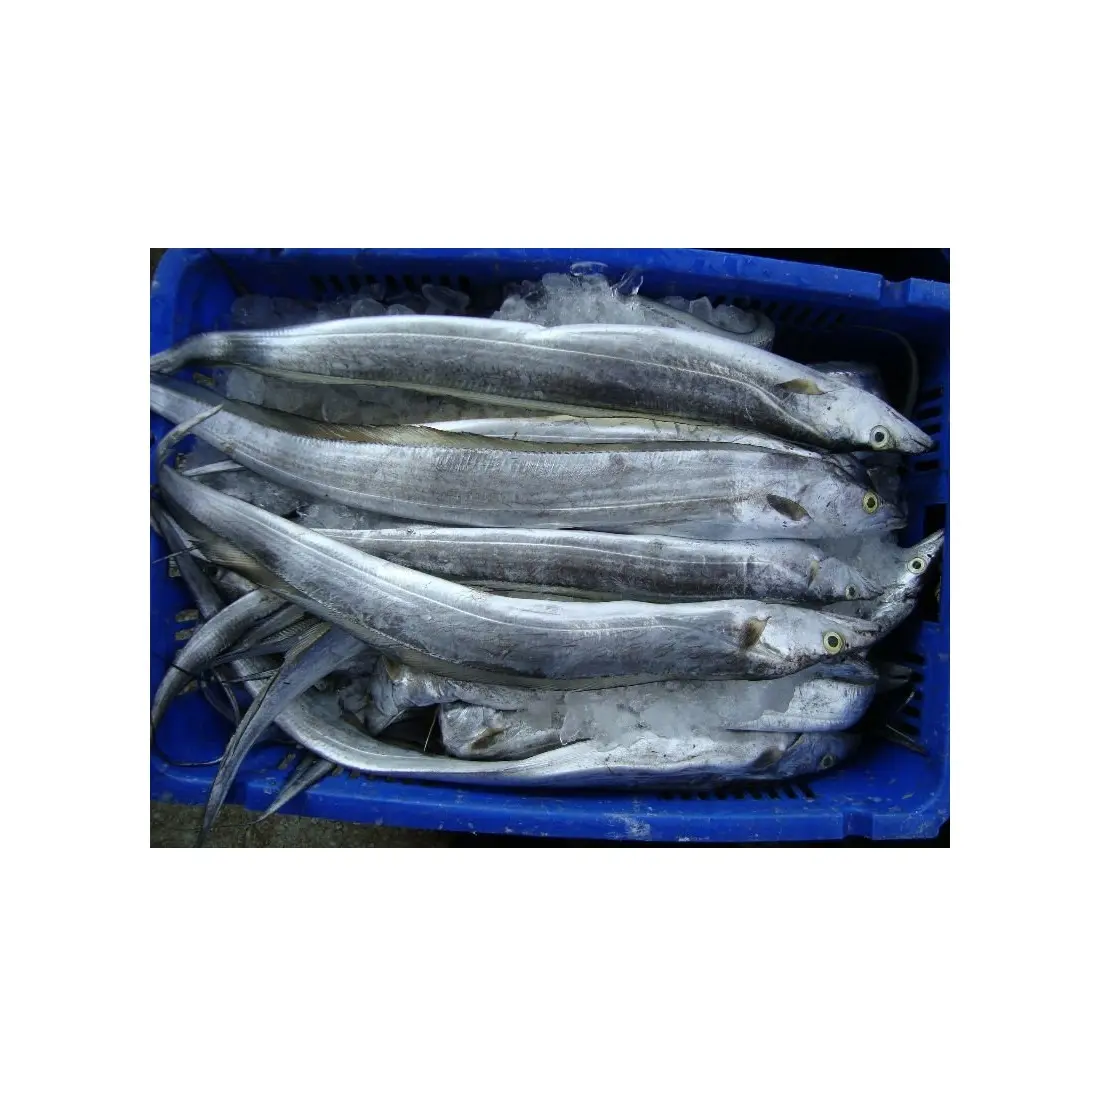 Pemasok makanan laut beku berukuran 500-700g IWP pita ikan beku